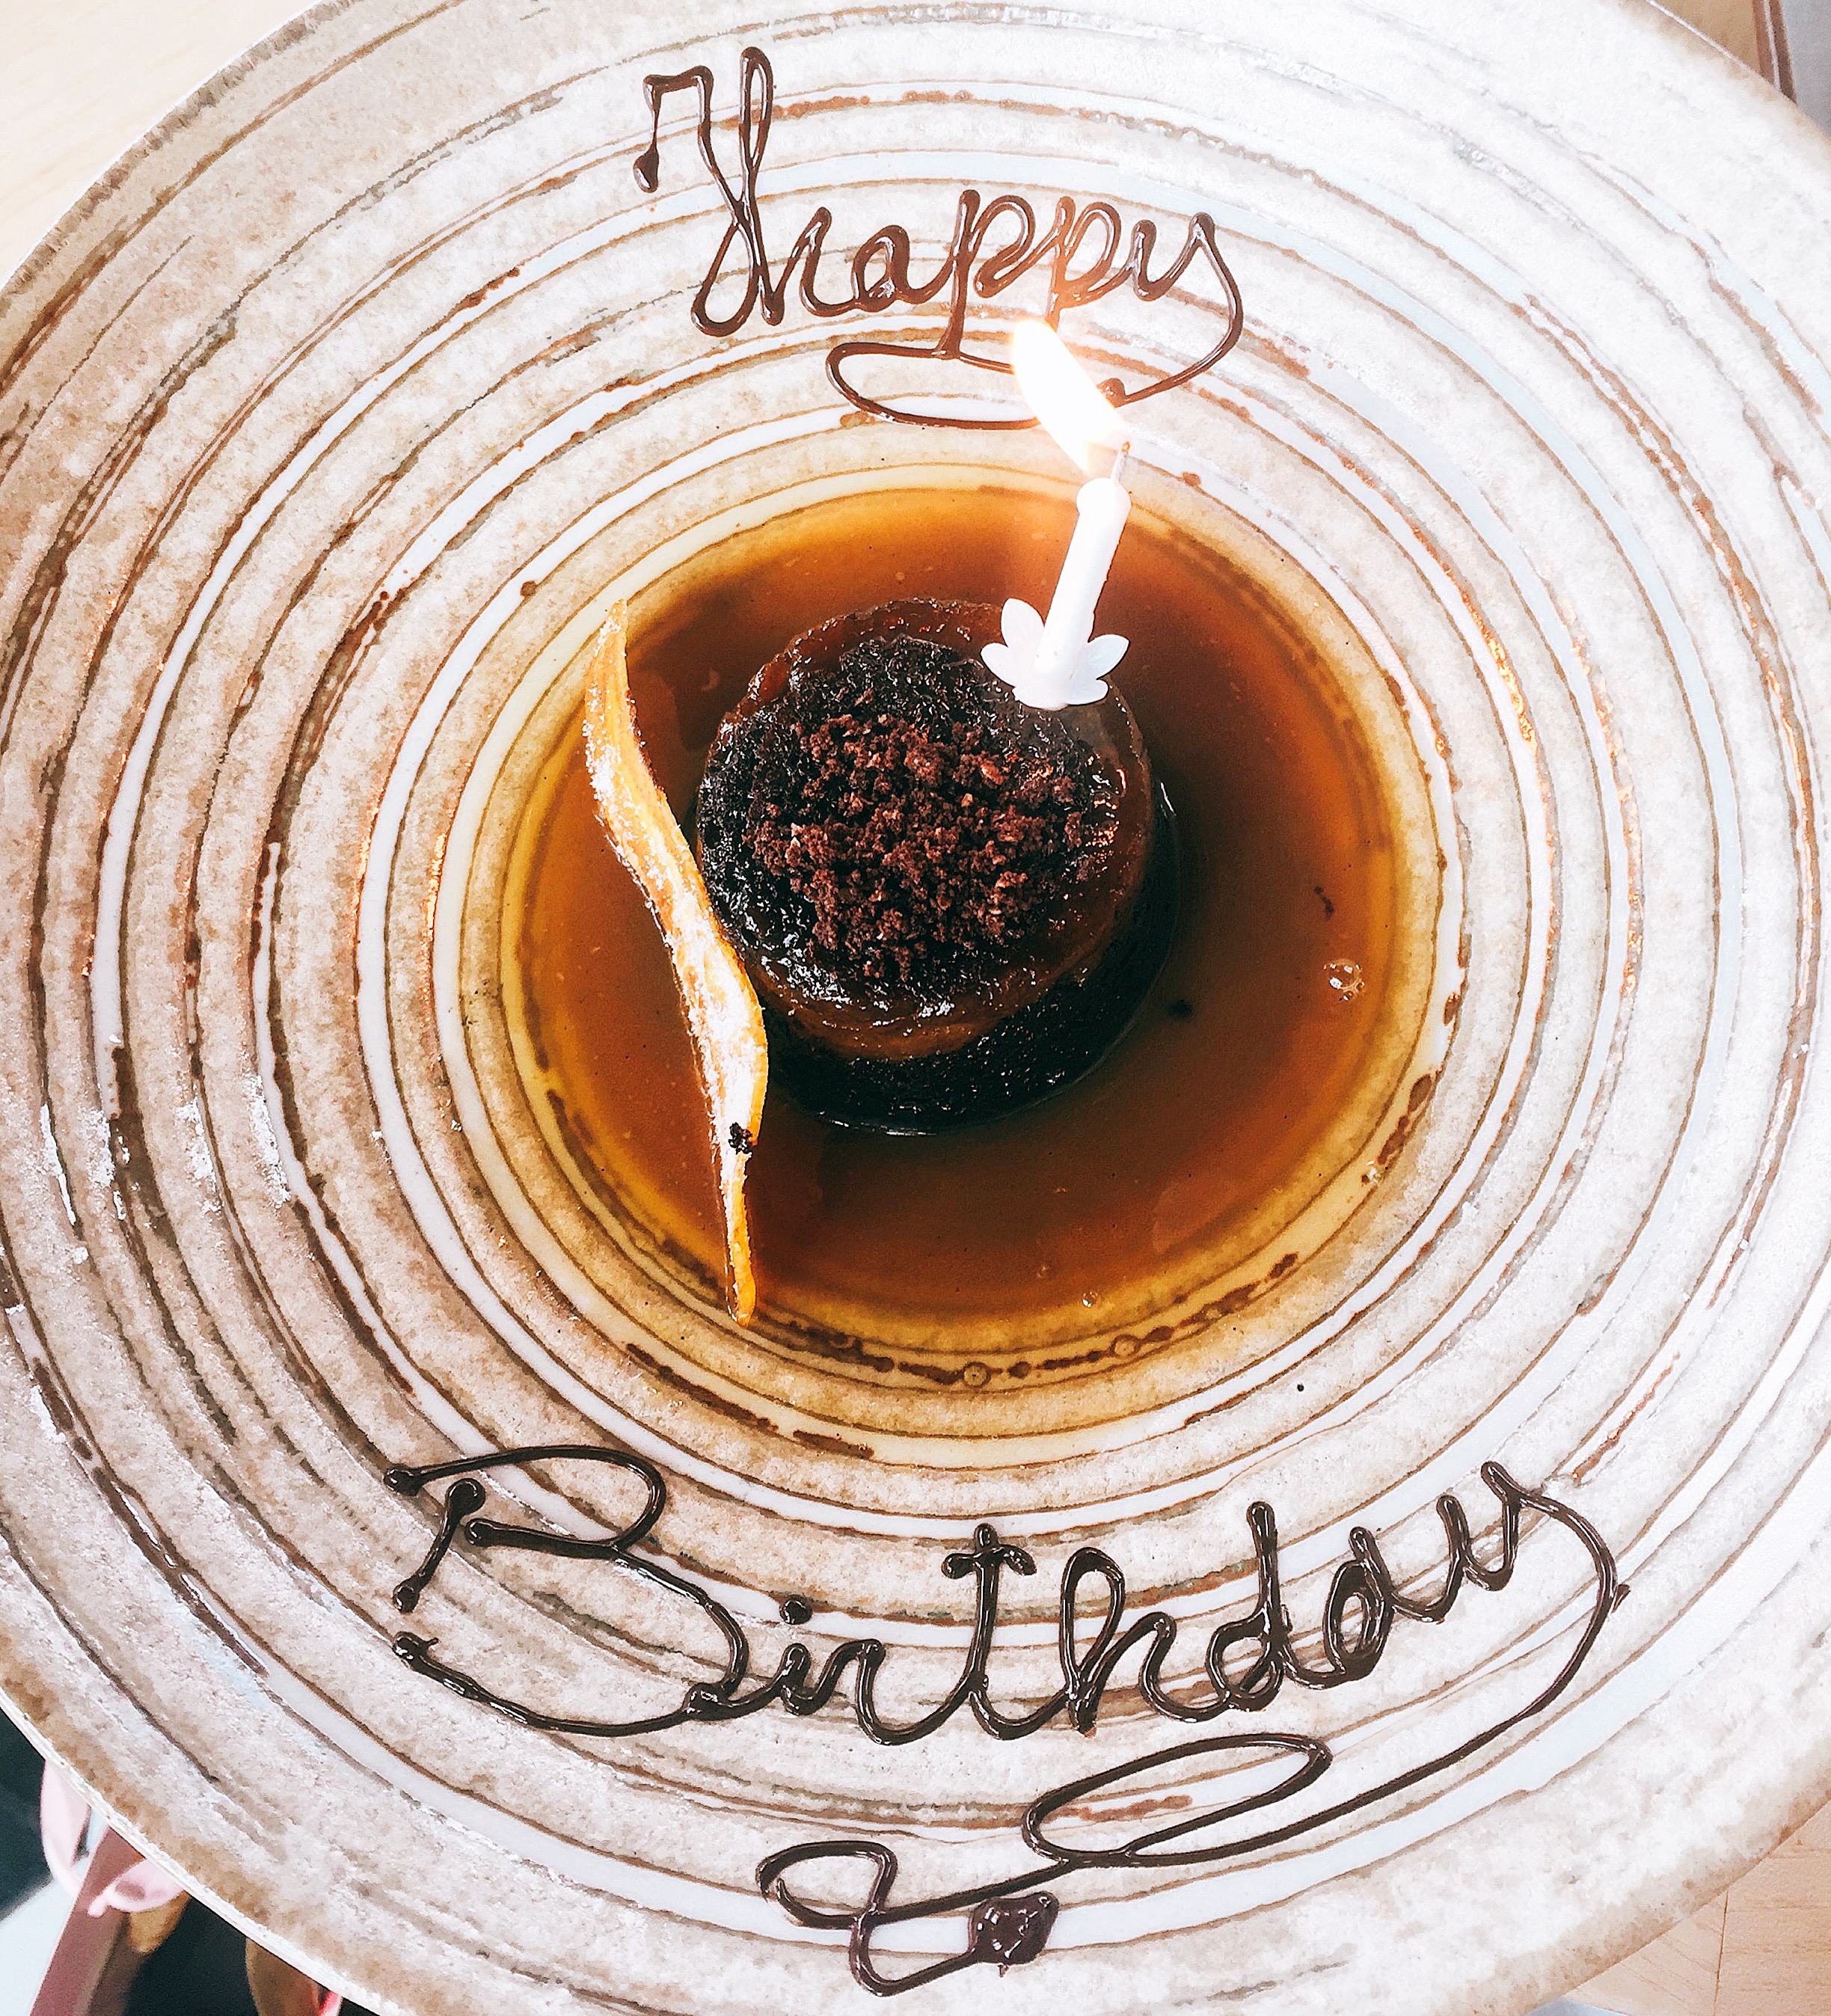 Dessert, Review: Birthday at Sushisamba London